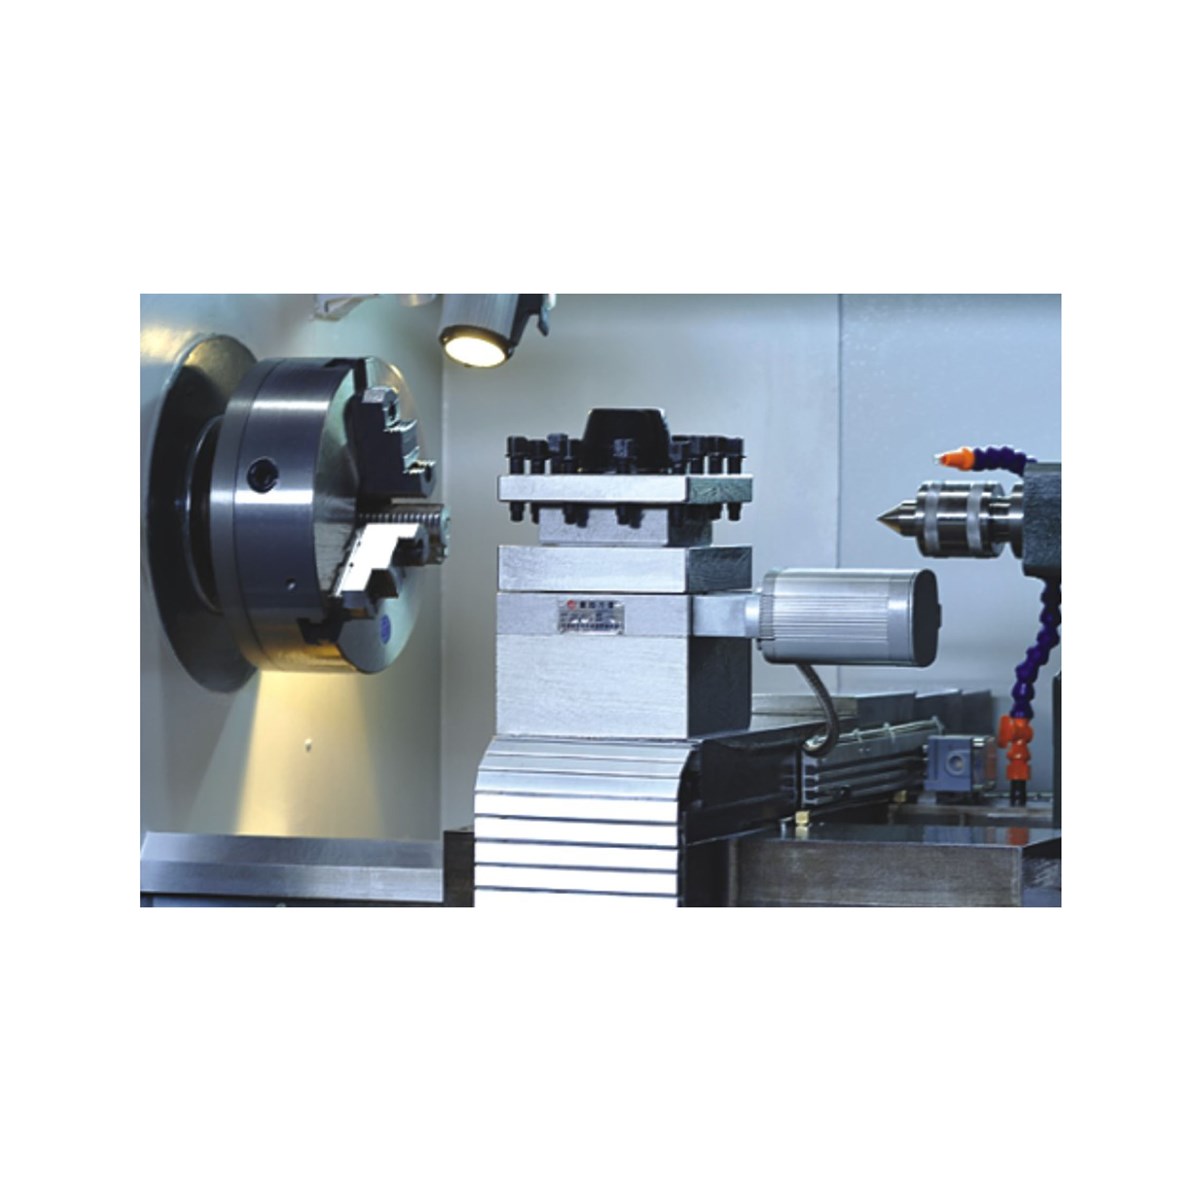 Horizontal Turning Machine CK600 CNC Lathe Machine